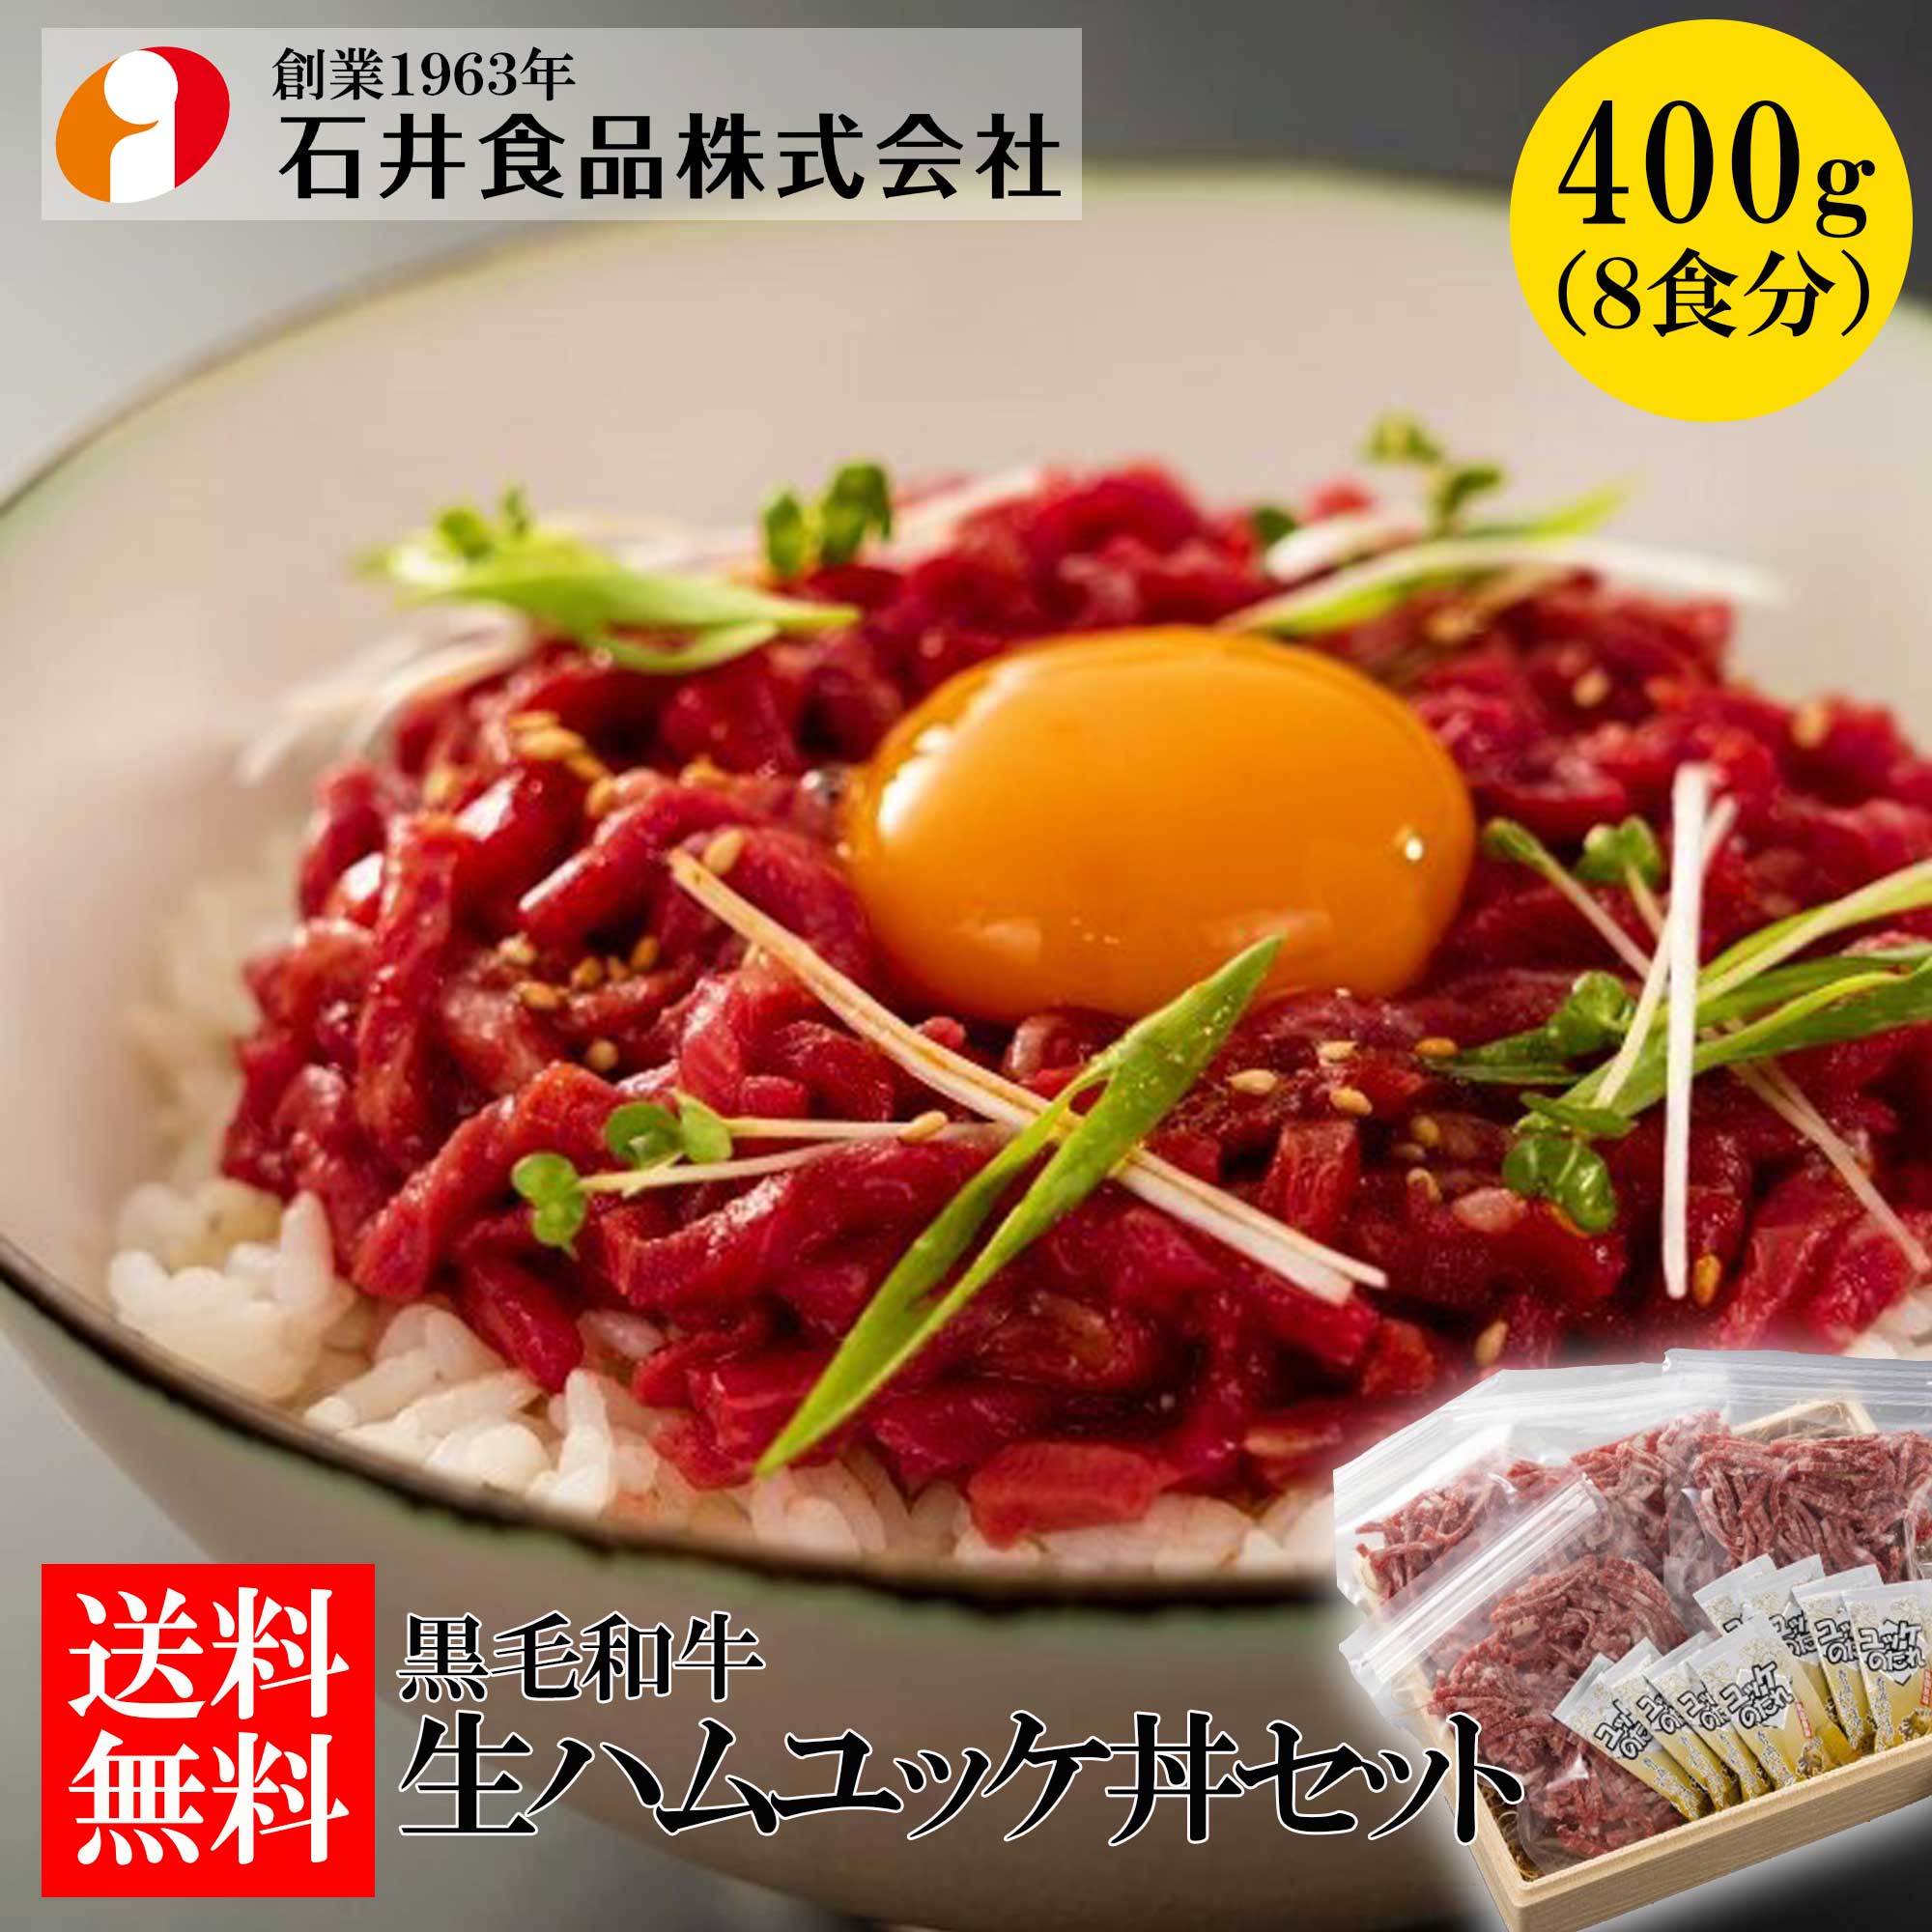 【石井食品】黒毛和牛 生ハムユッケ丼セット400g